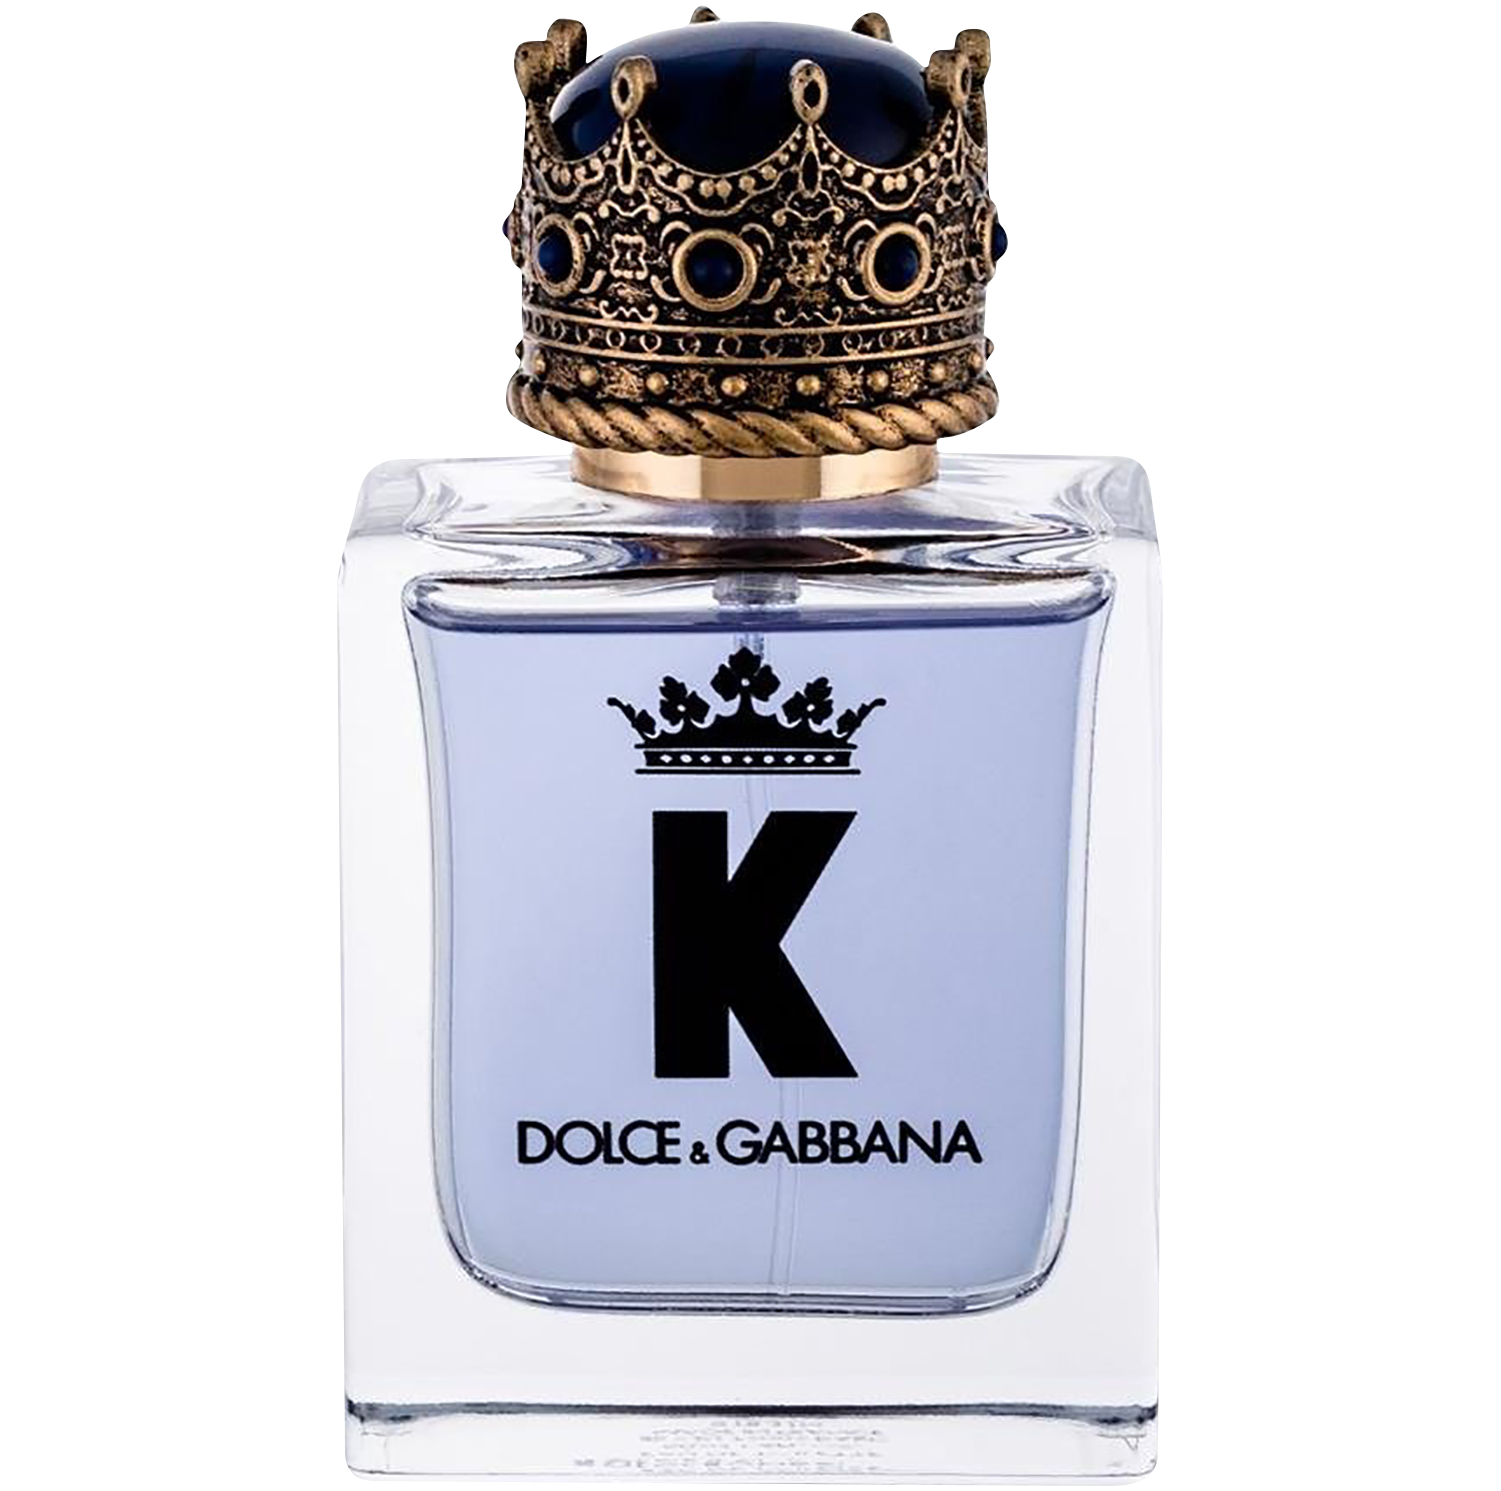 Дольче габбана духи с короной женские. Dolce Gabbana k 50ml. Дольче Габбана 50 мл. Dolce&Gabbana k by Dolce&Gabbana 50 ml. Dolce Gabbana King 50 мл.